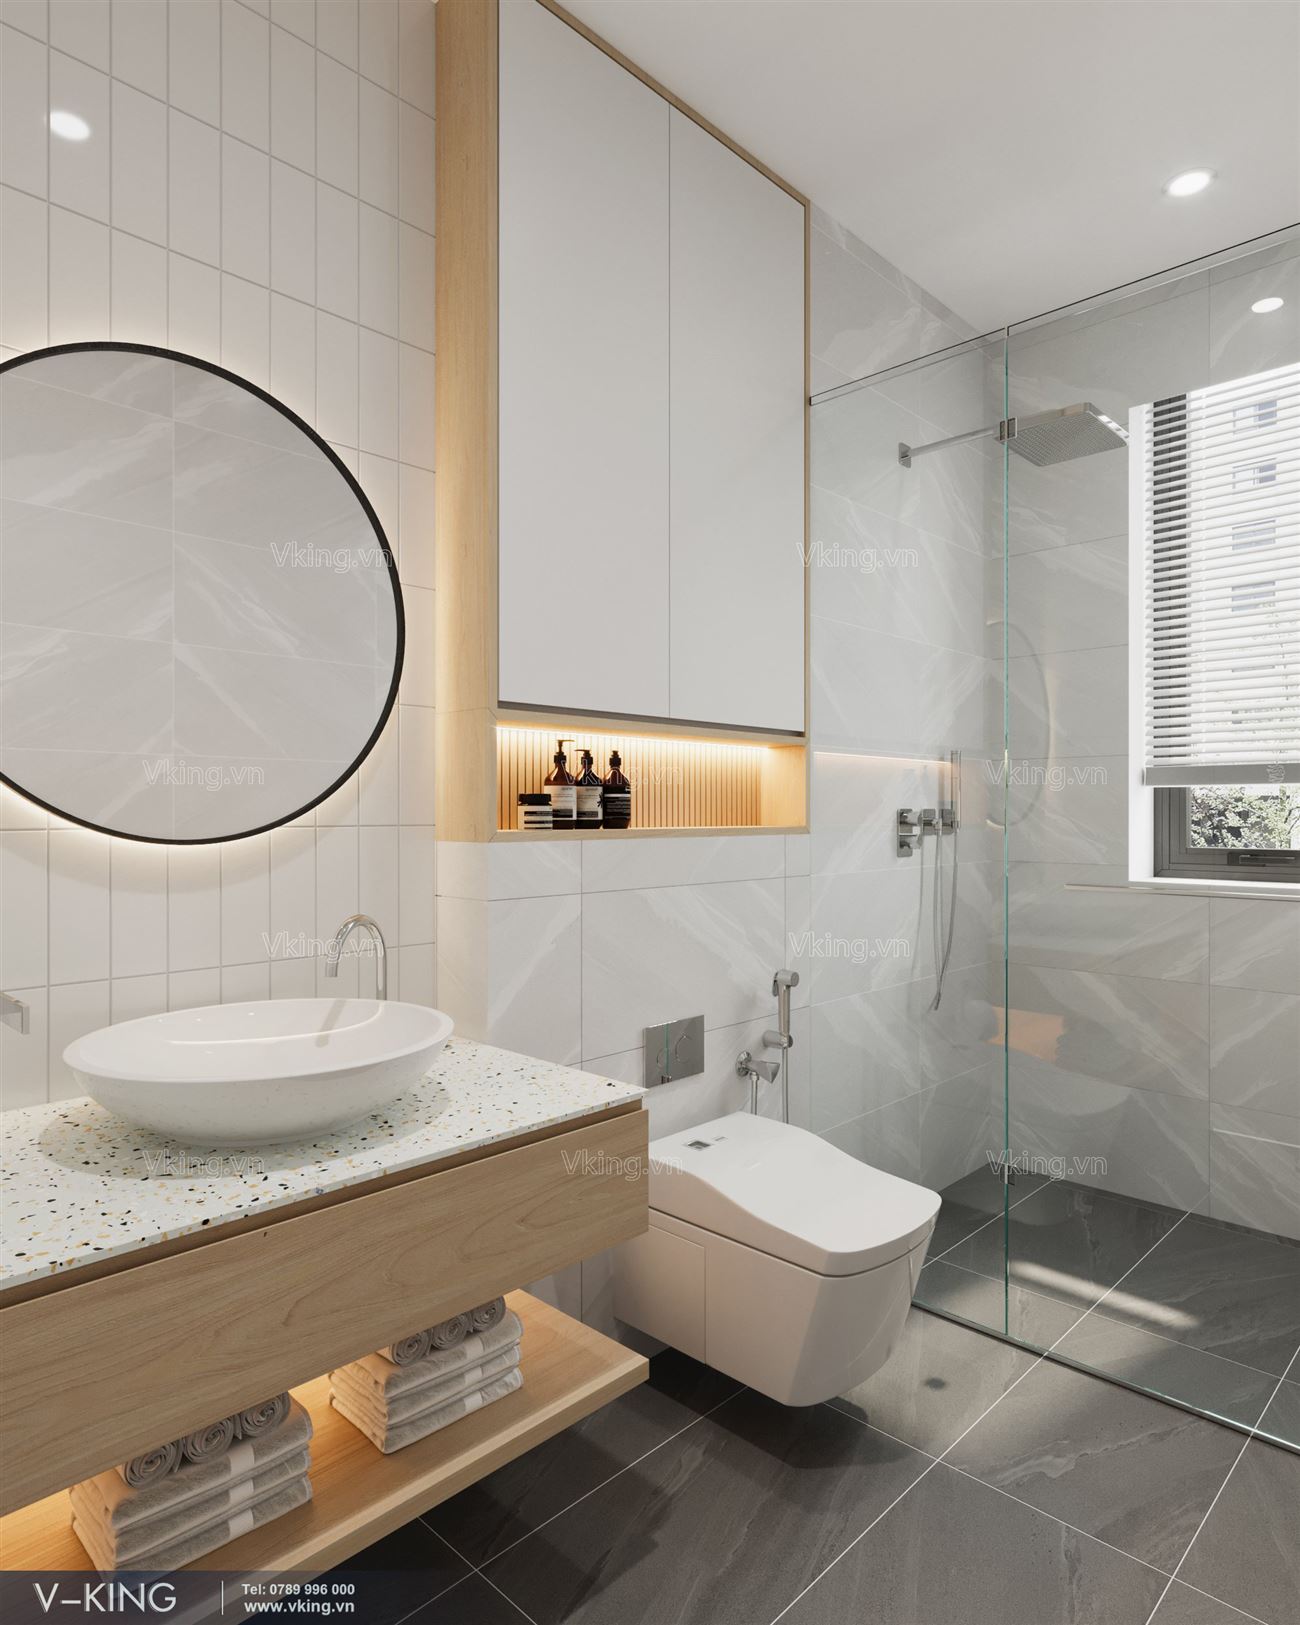 Mẫu phòng tắm đẹp với nội thất hiện đại